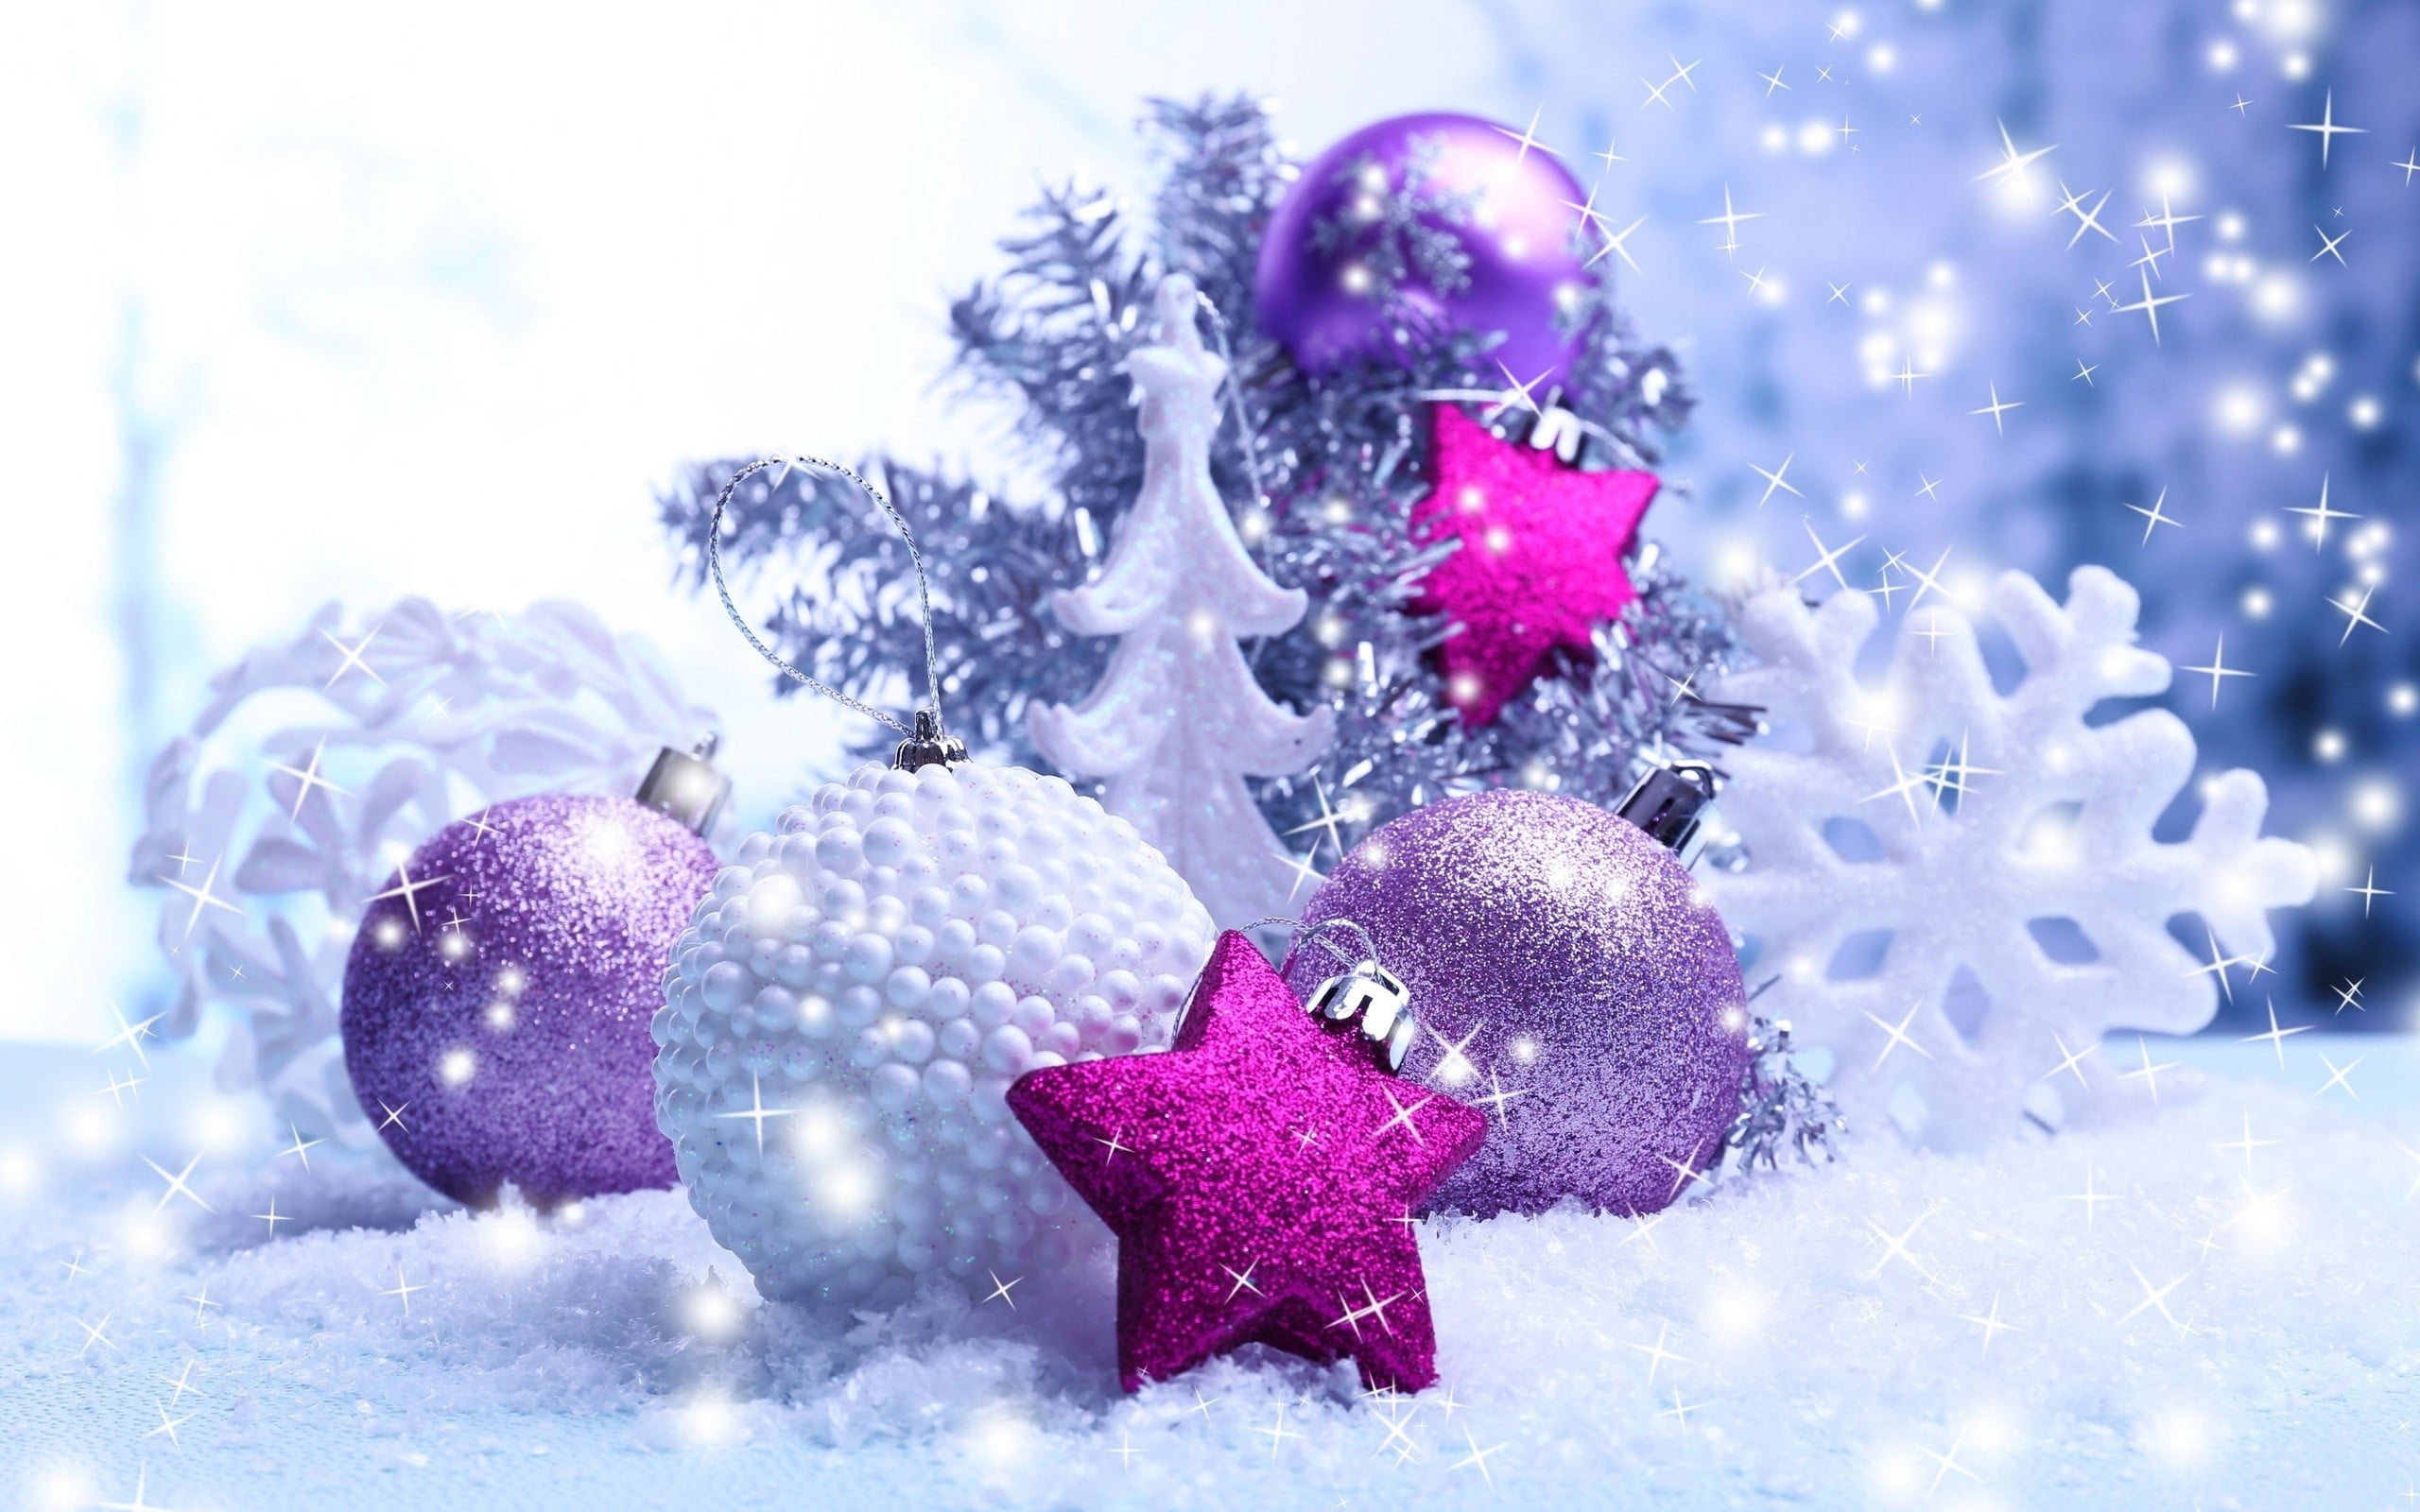 Hãy tìm hiểu về những hình nền cây thông Giáng sinh để tô điểm cho màn hình của bạn trong mùa lễ hội sắp tới. Sự hòa trộn giữa gam màu xanh lá cây và đỏ Giáng sinh sẽ mang đến cảm giác ấm áp và đầy kỳ vọng cho mùa đông năm nay.